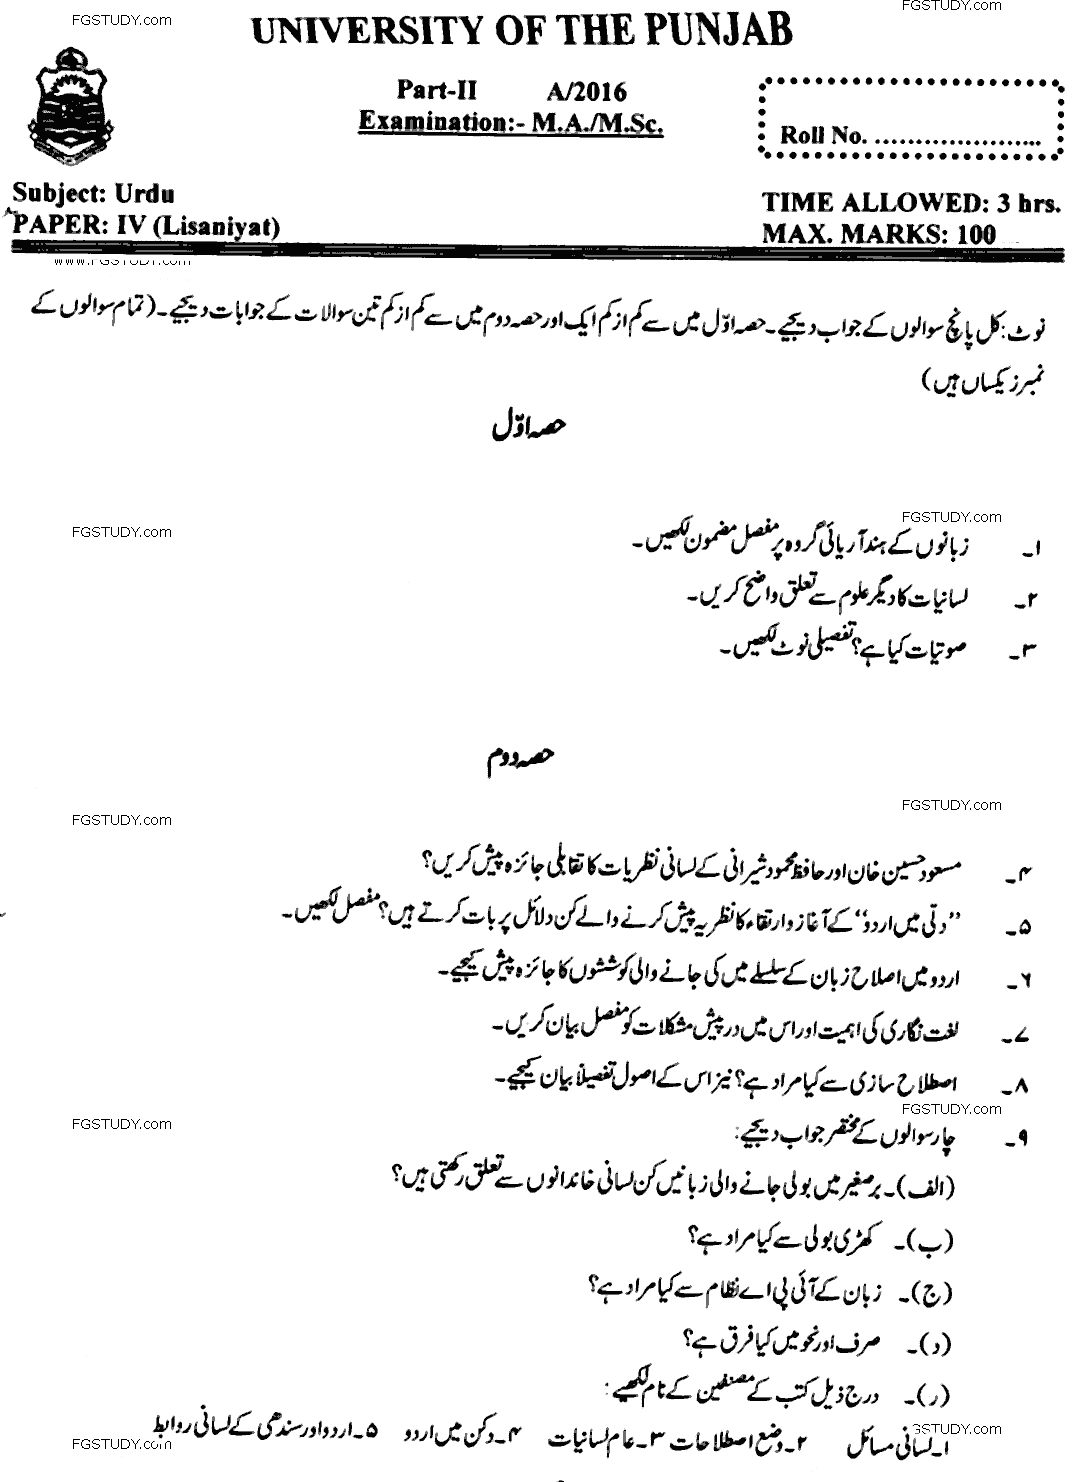 MA Part 2 Urdu Lisaniyat Past Paper 2016 Punjab University